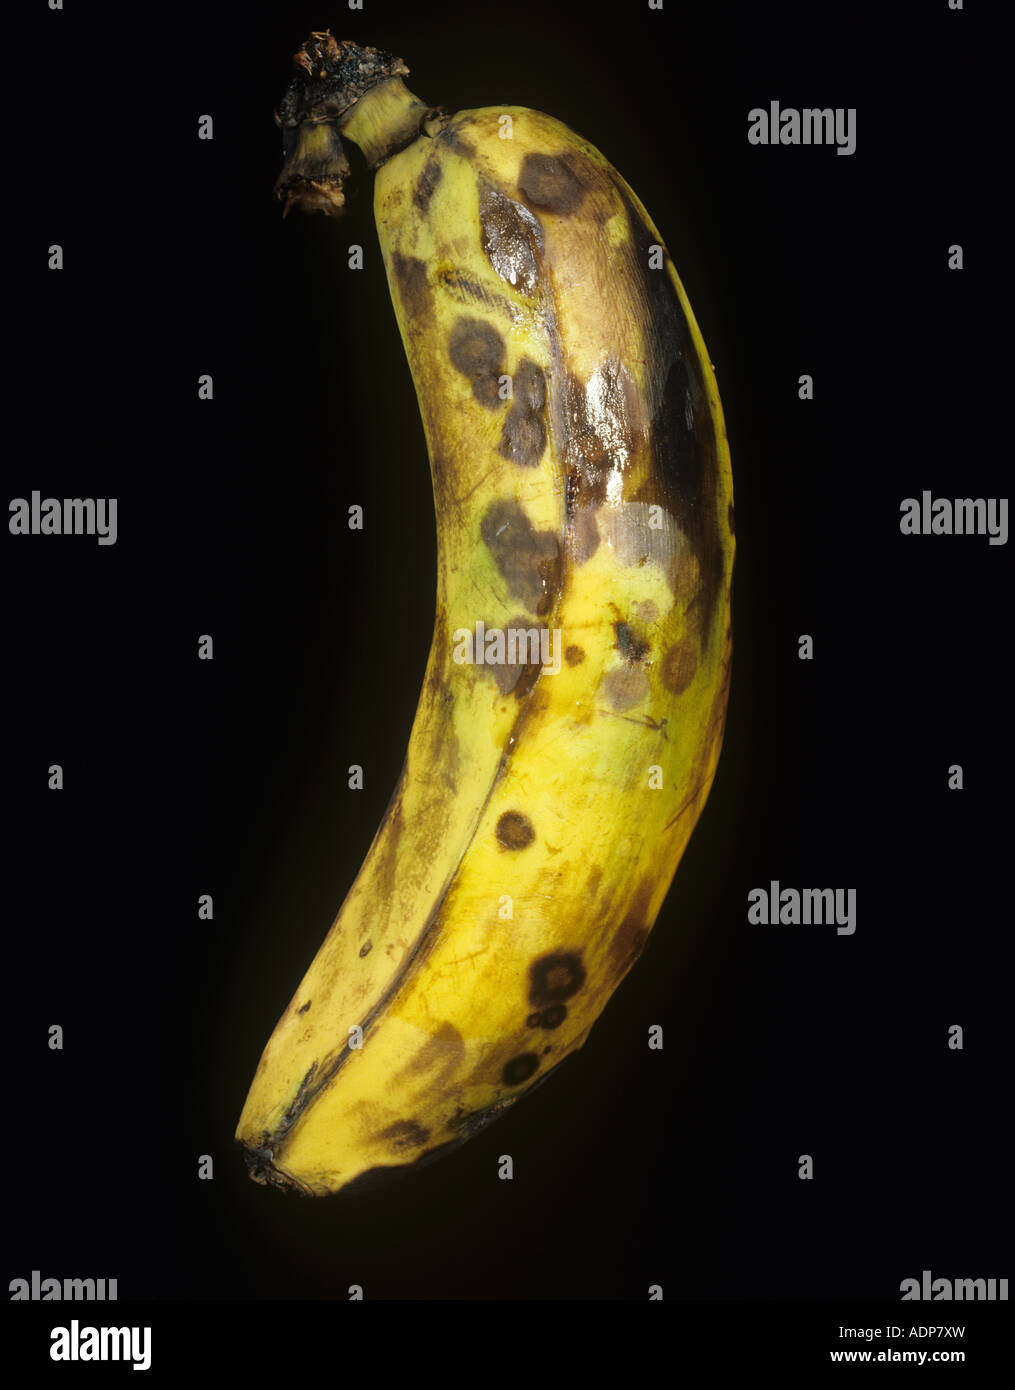 Anthraknose Colletotrichum Musen eine Speicherkrankheit an reife Banane Frucht Kolumbien Stockfoto